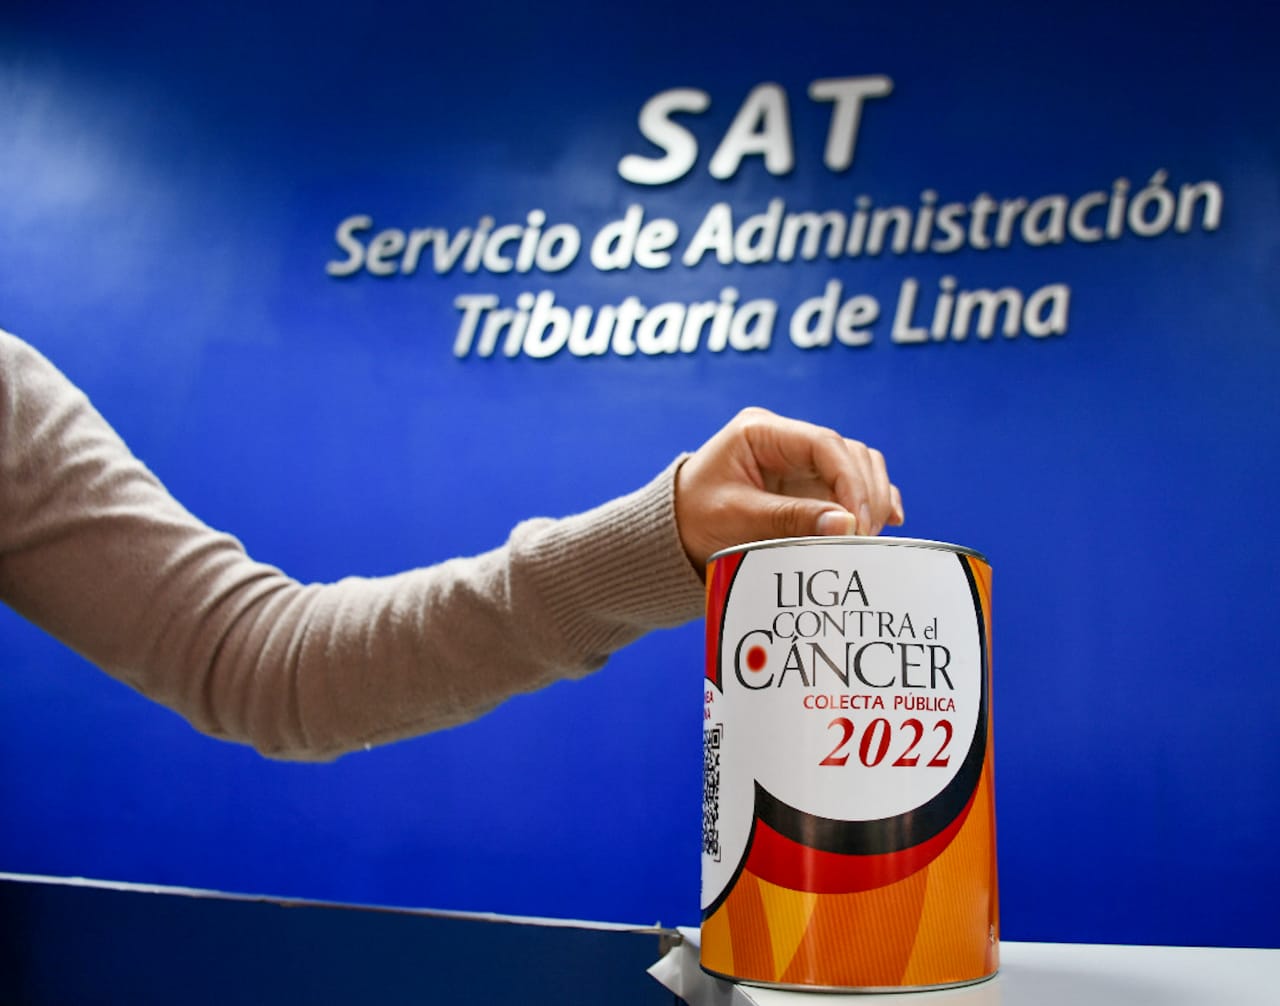 SAT de Lima se suma a la colecta pública de la Liga contra el Cáncer